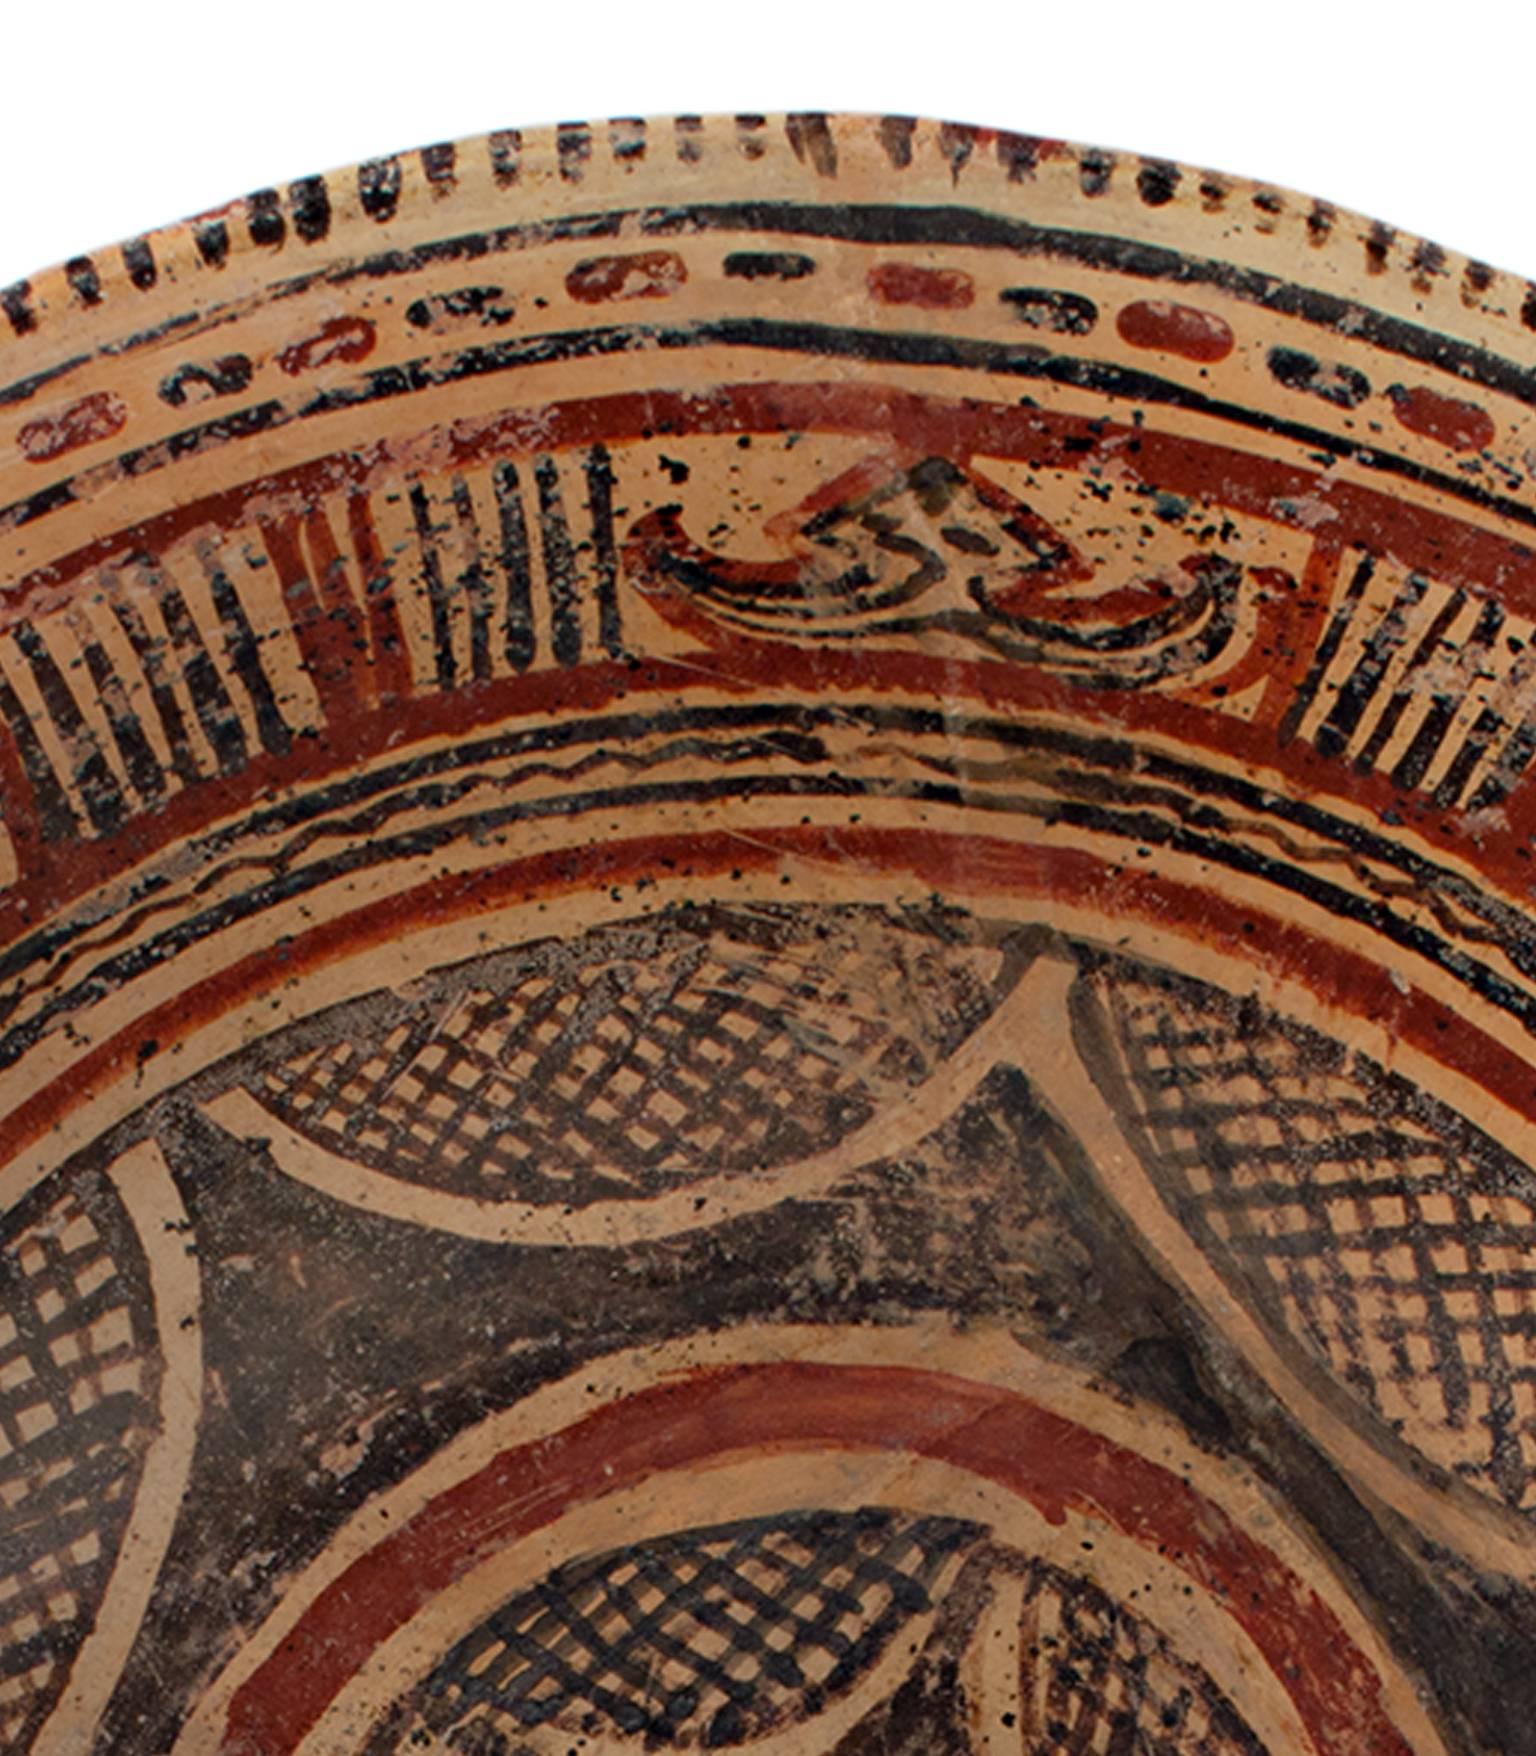 „Prekolumbianische Chinesco-Schale“, glasierte Keramik, um 300 v. Chr. (Braun), Abstract Sculpture, von Unknown